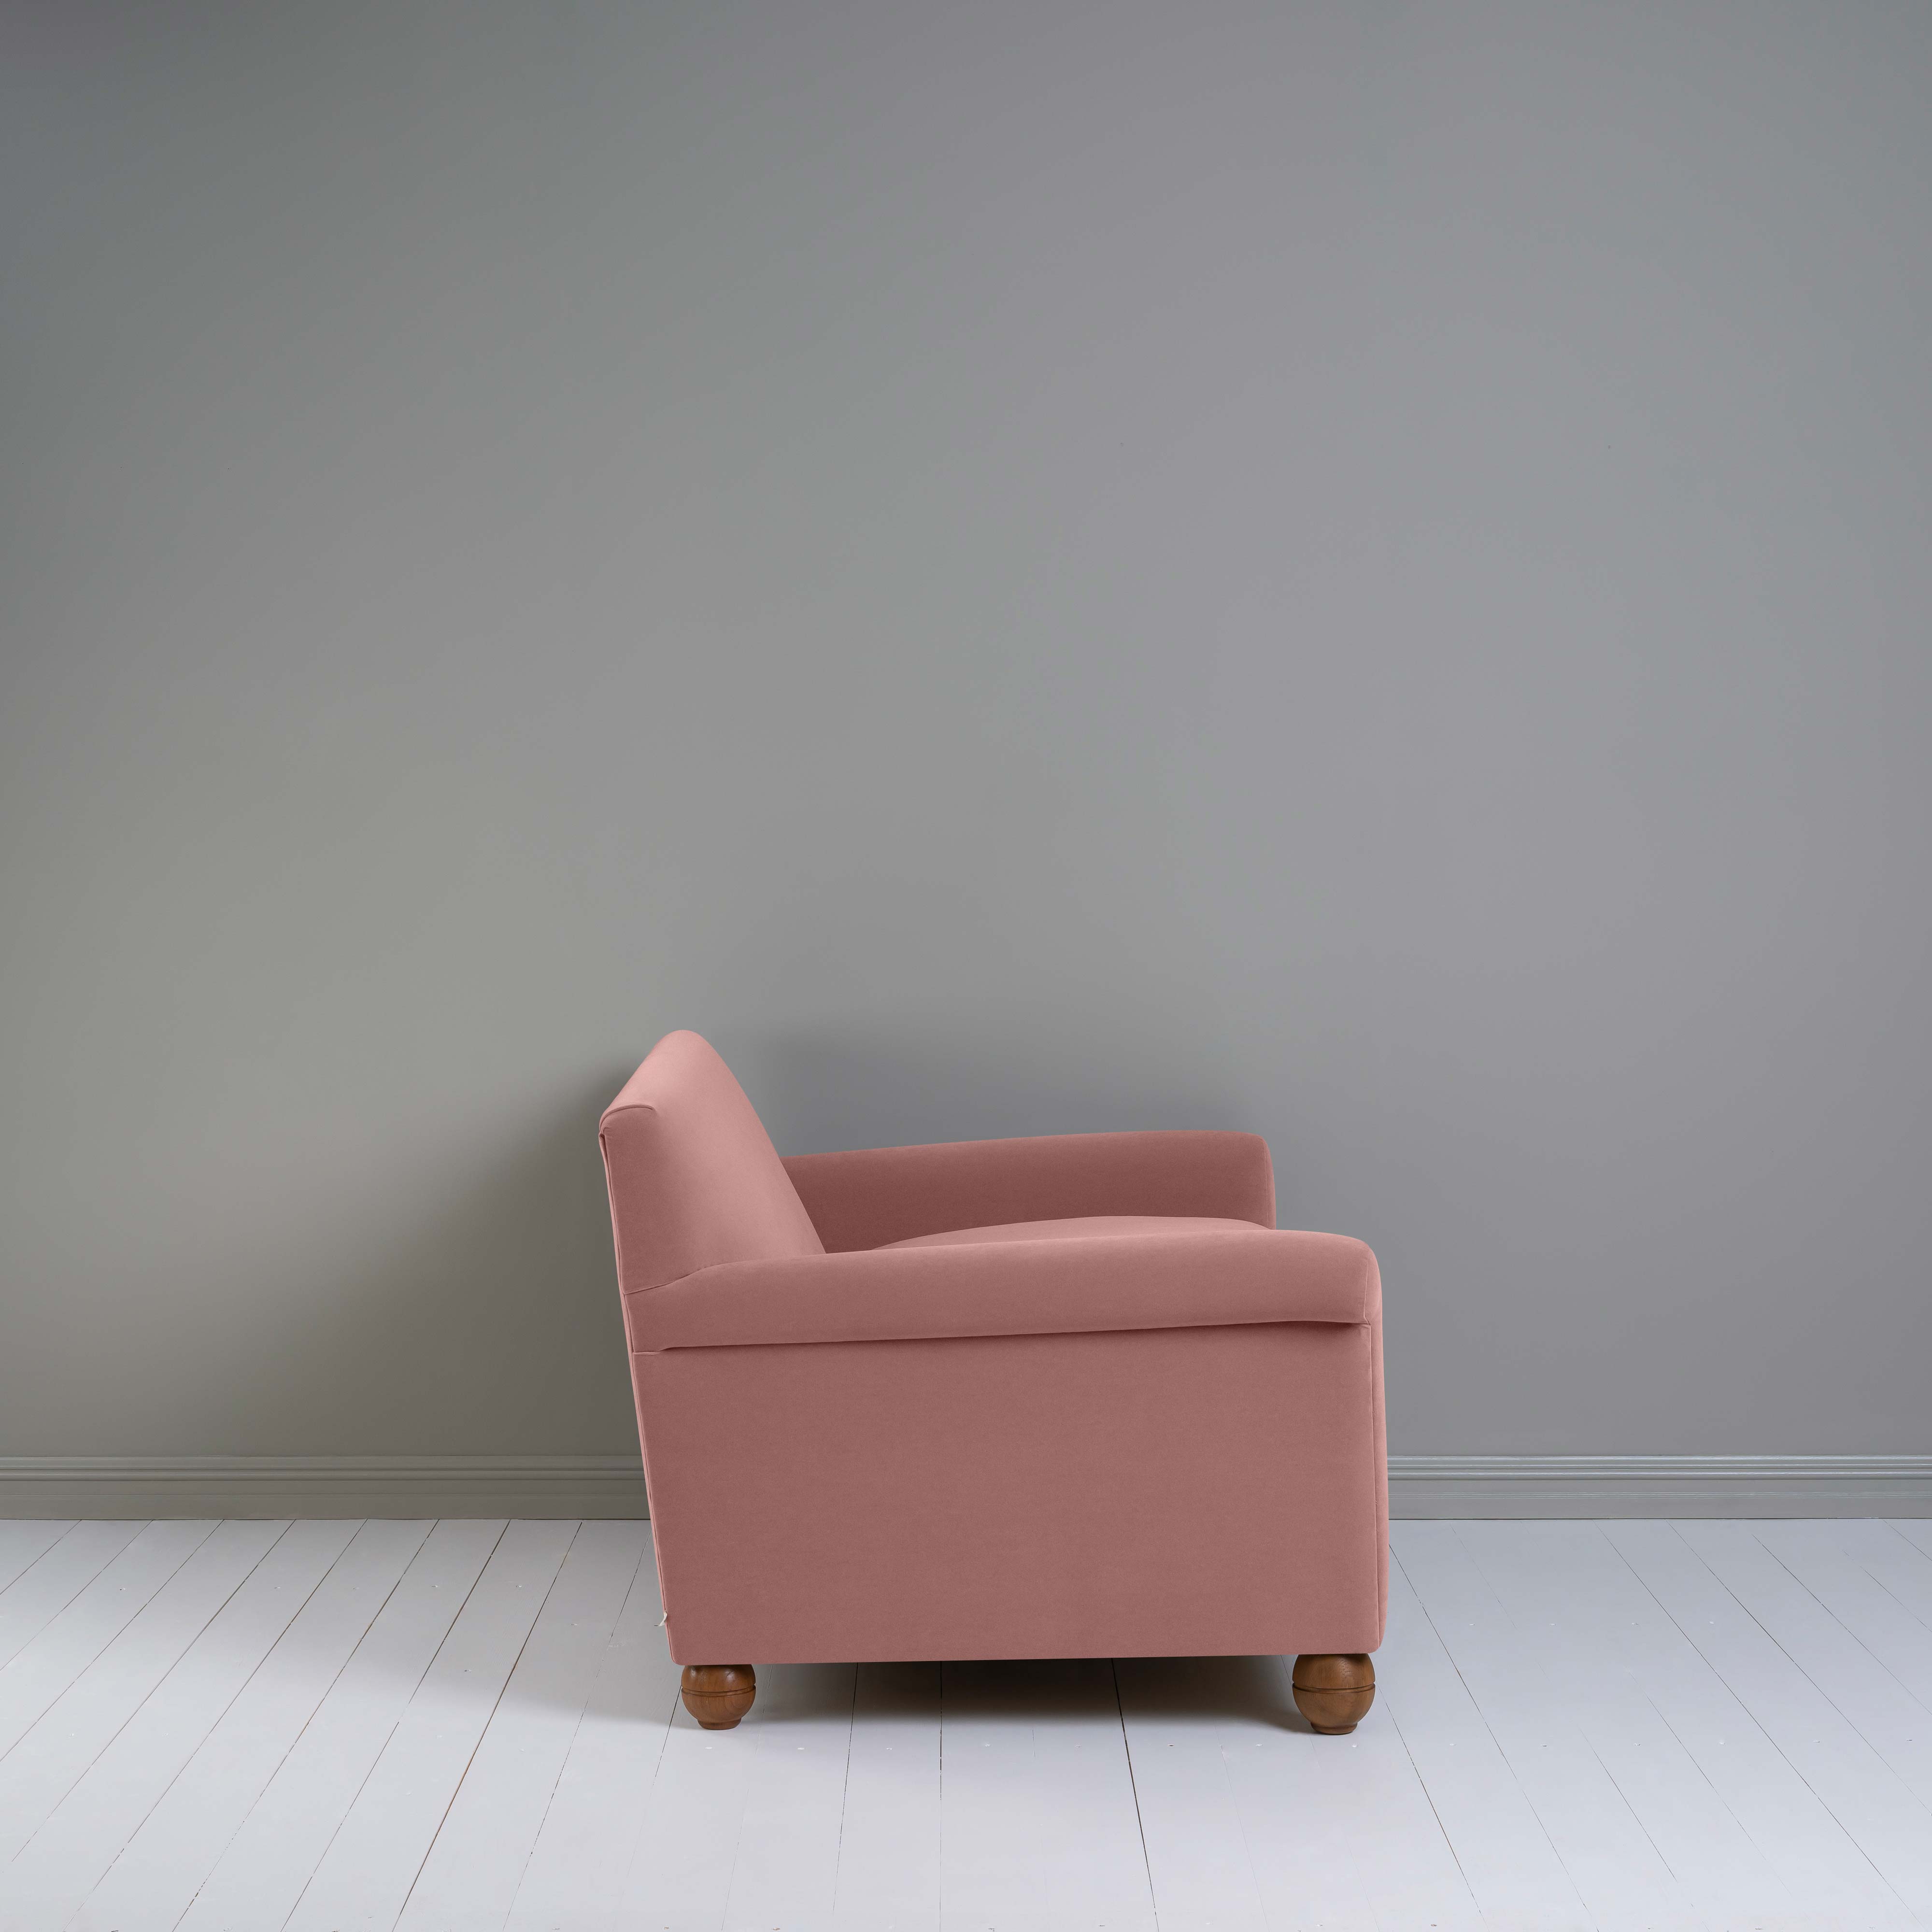  Idler 2 Seater Sofa in Intelligent Velvet Rose 